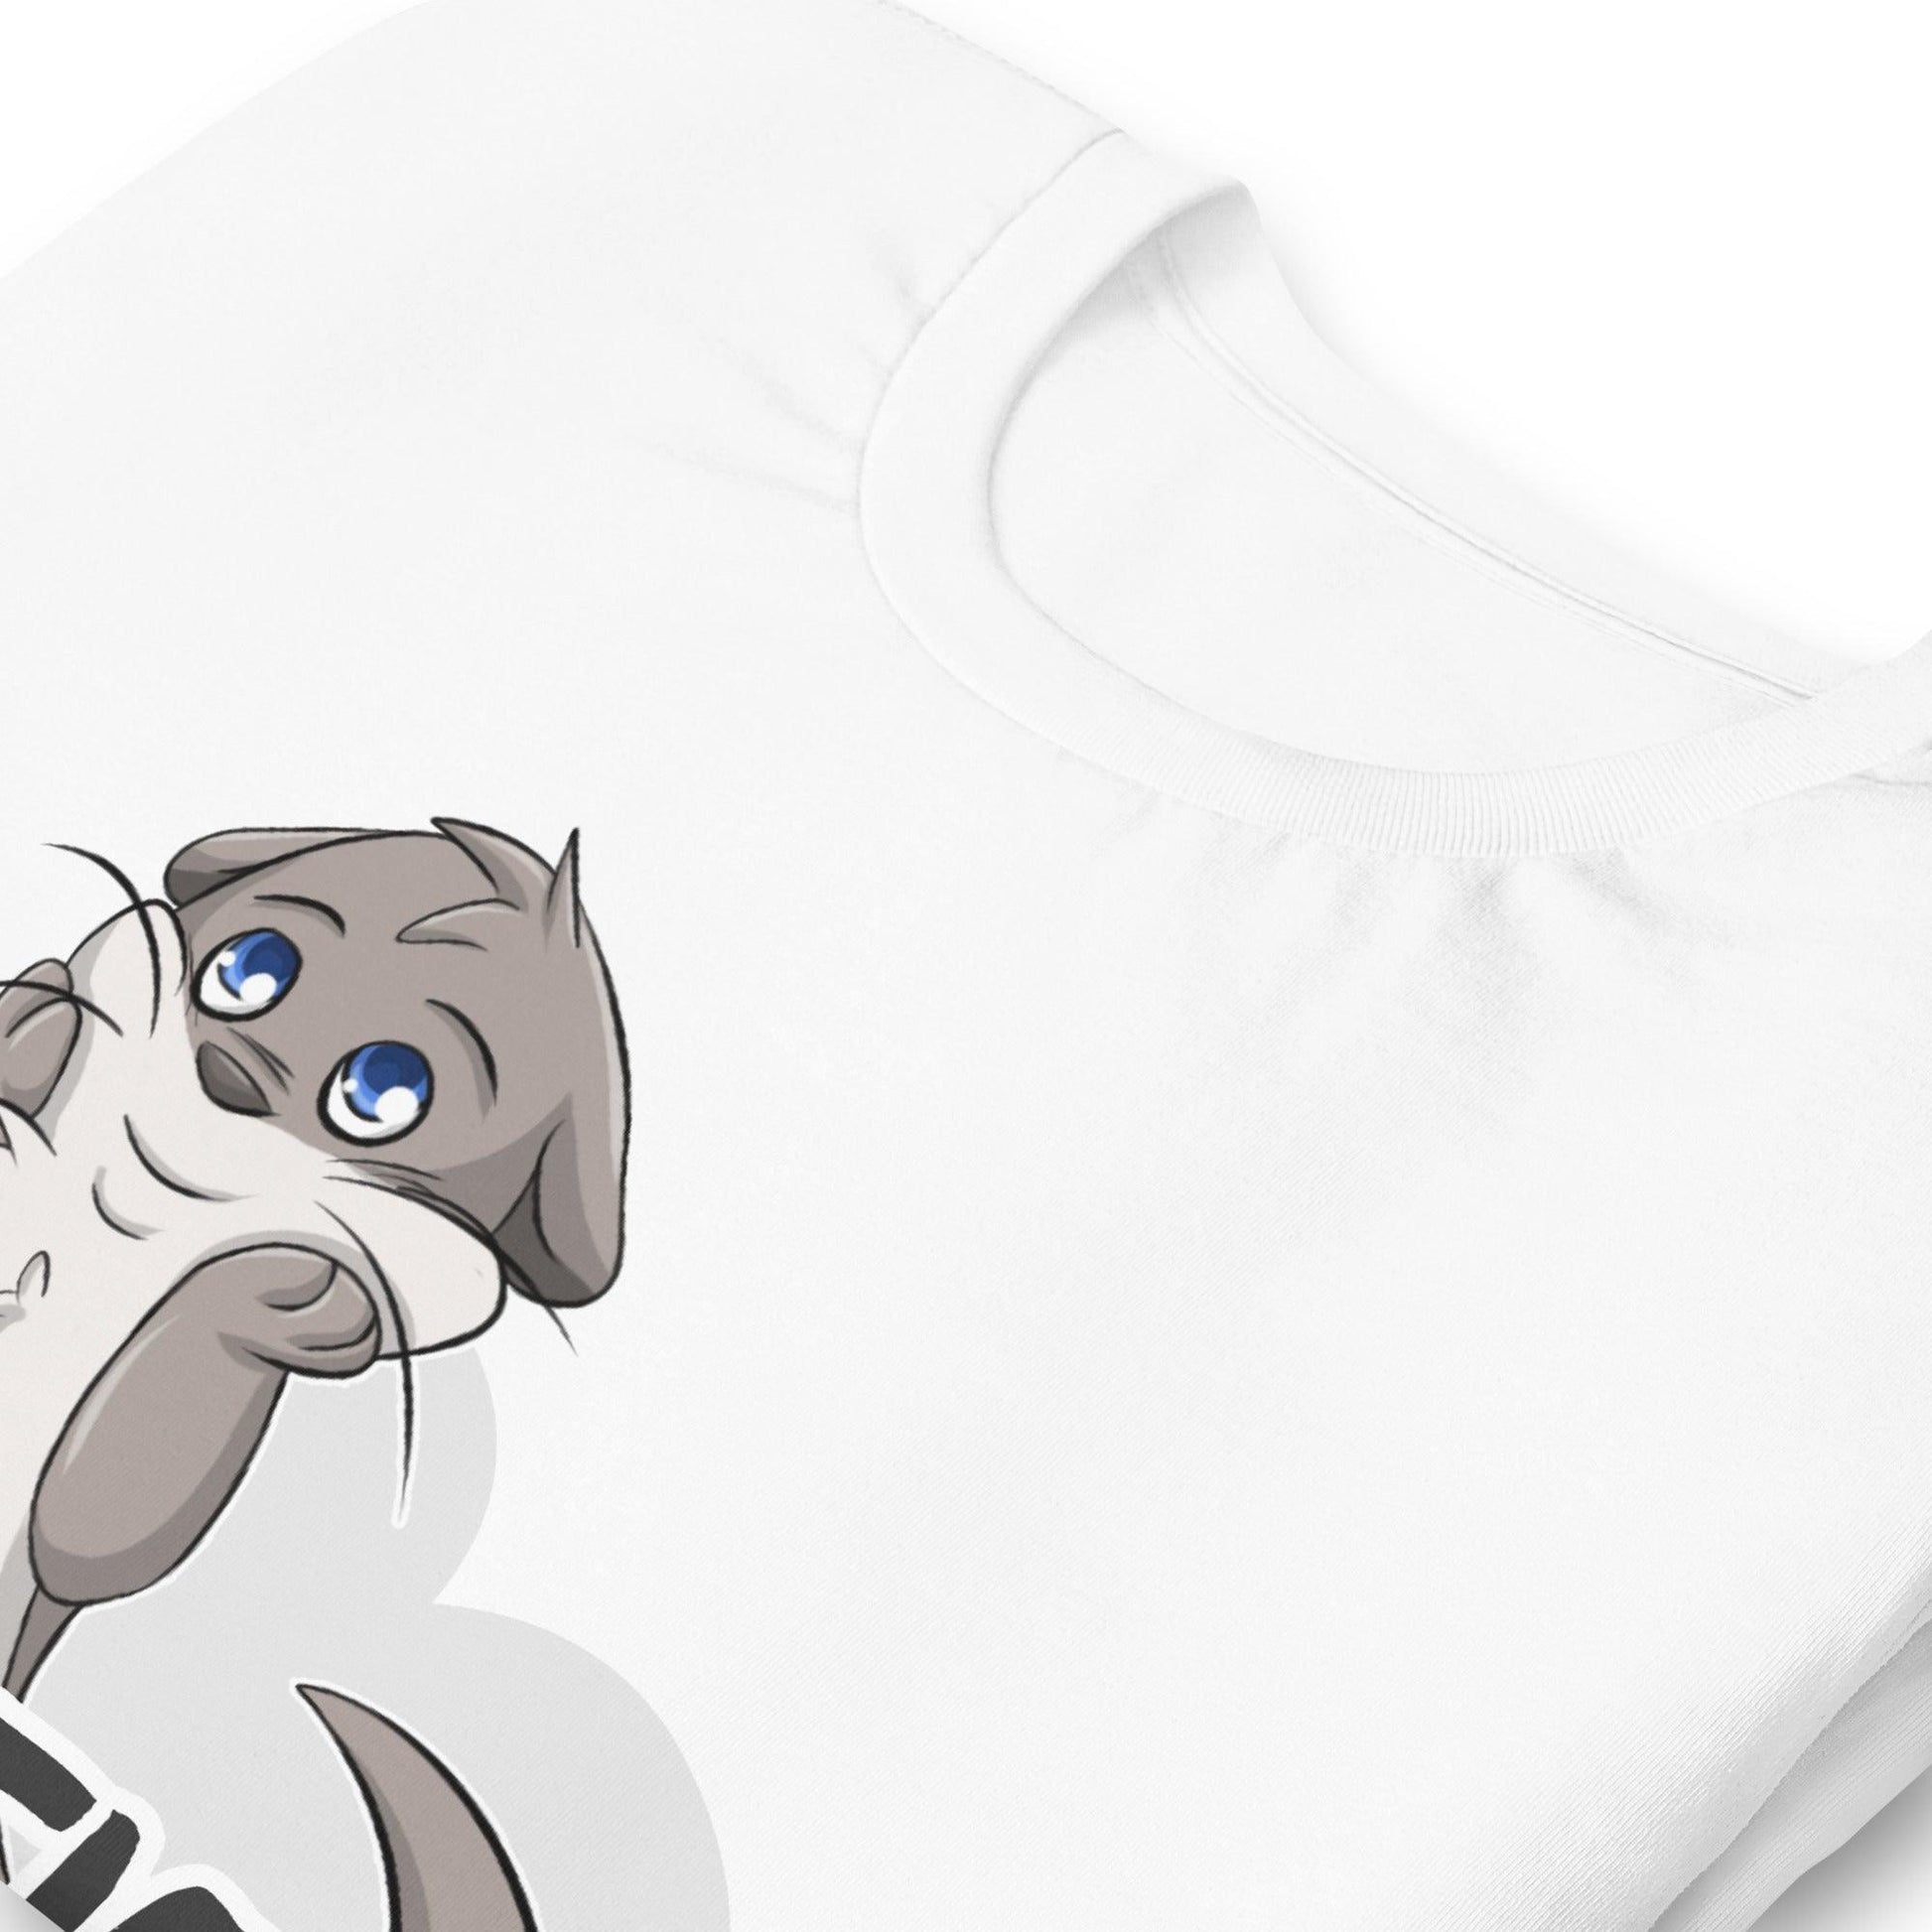 Cutie Patootie - Otter - Unisex t-shirt - Fennek Fluff Cutie Patootie - Otter - Unisex t-shirt - undefined